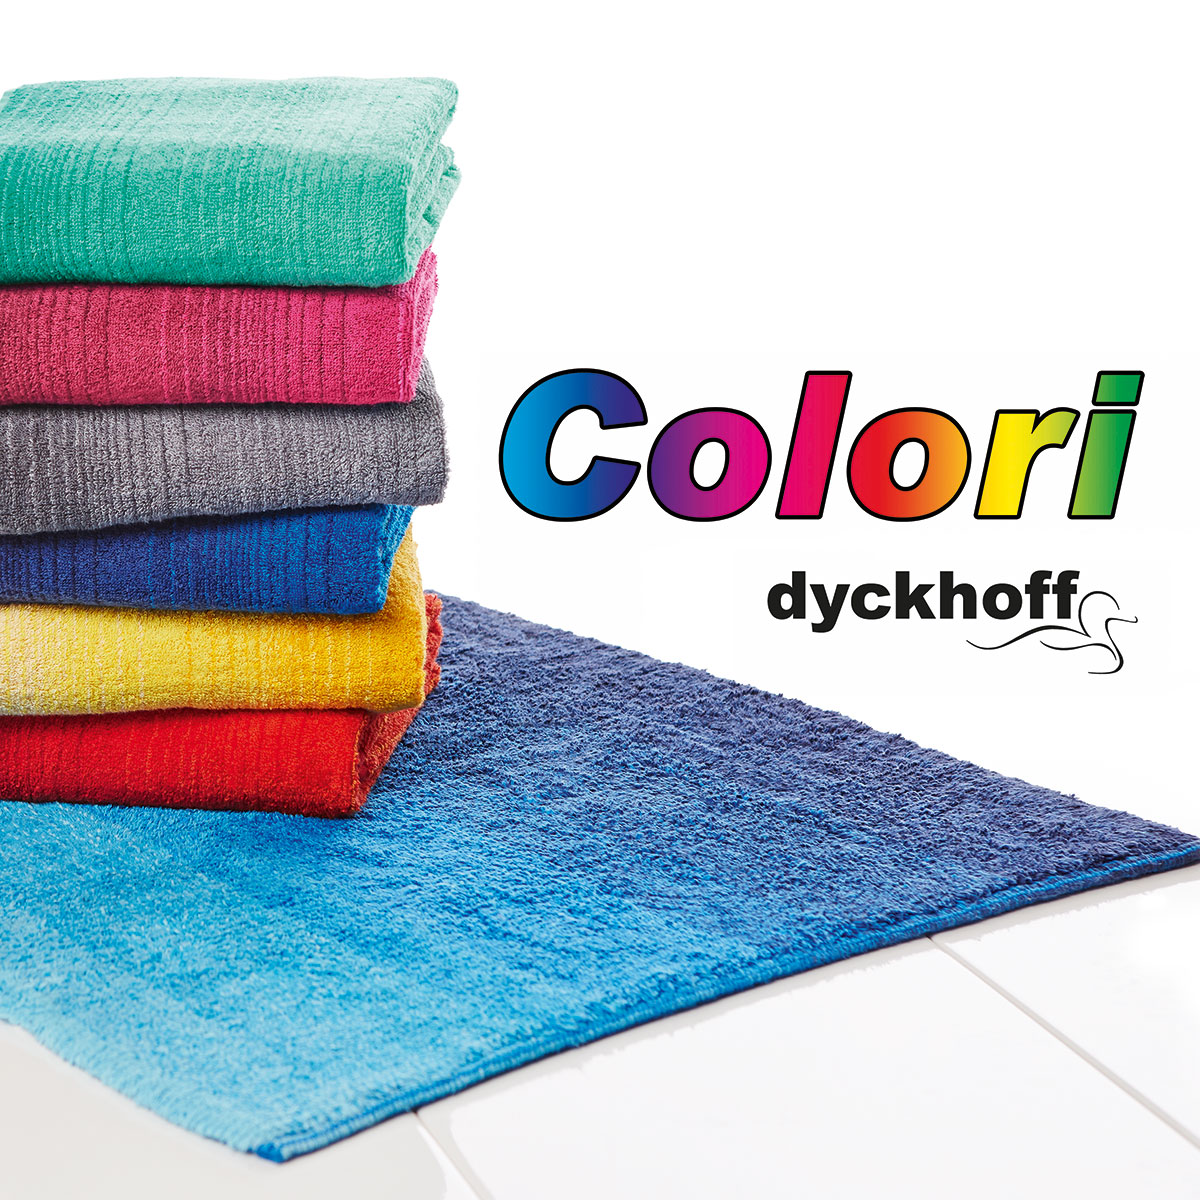 Colori, das hochwertige Biobaumwolle-Handtuch aus dem Hause Dyckhoff, mit  eleganten Farbmelangeeffekten, | Dyckhoff GmbH